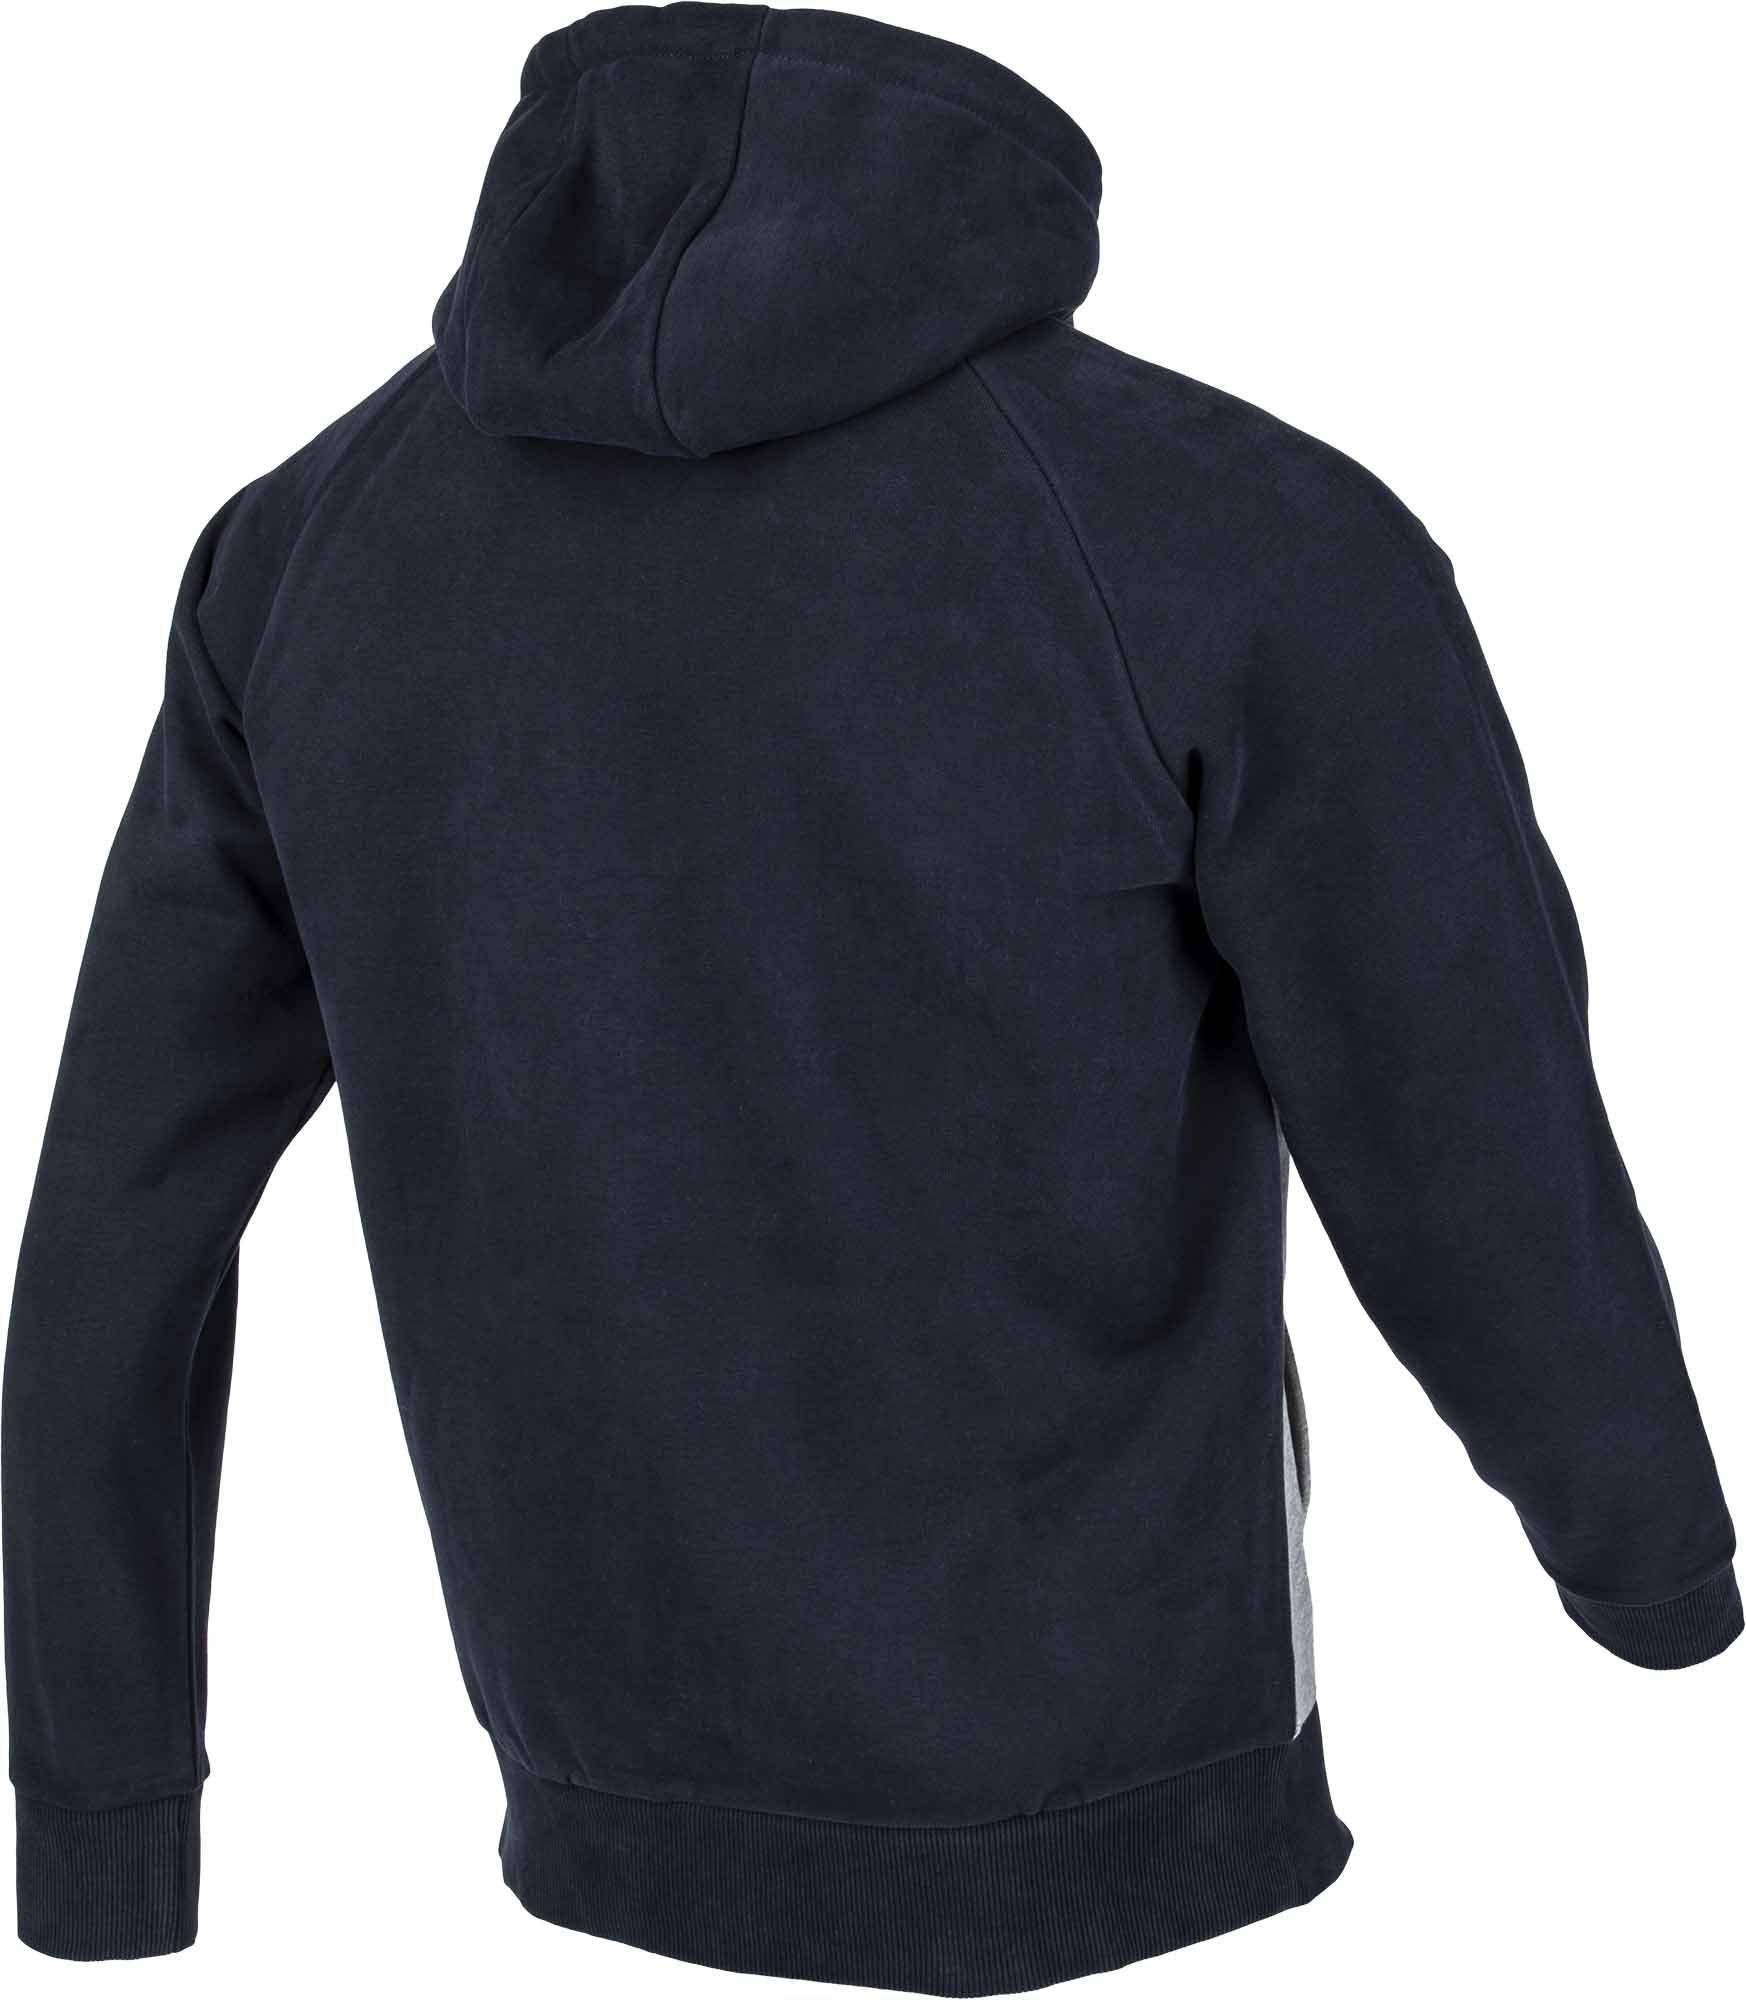 Men's hoodie